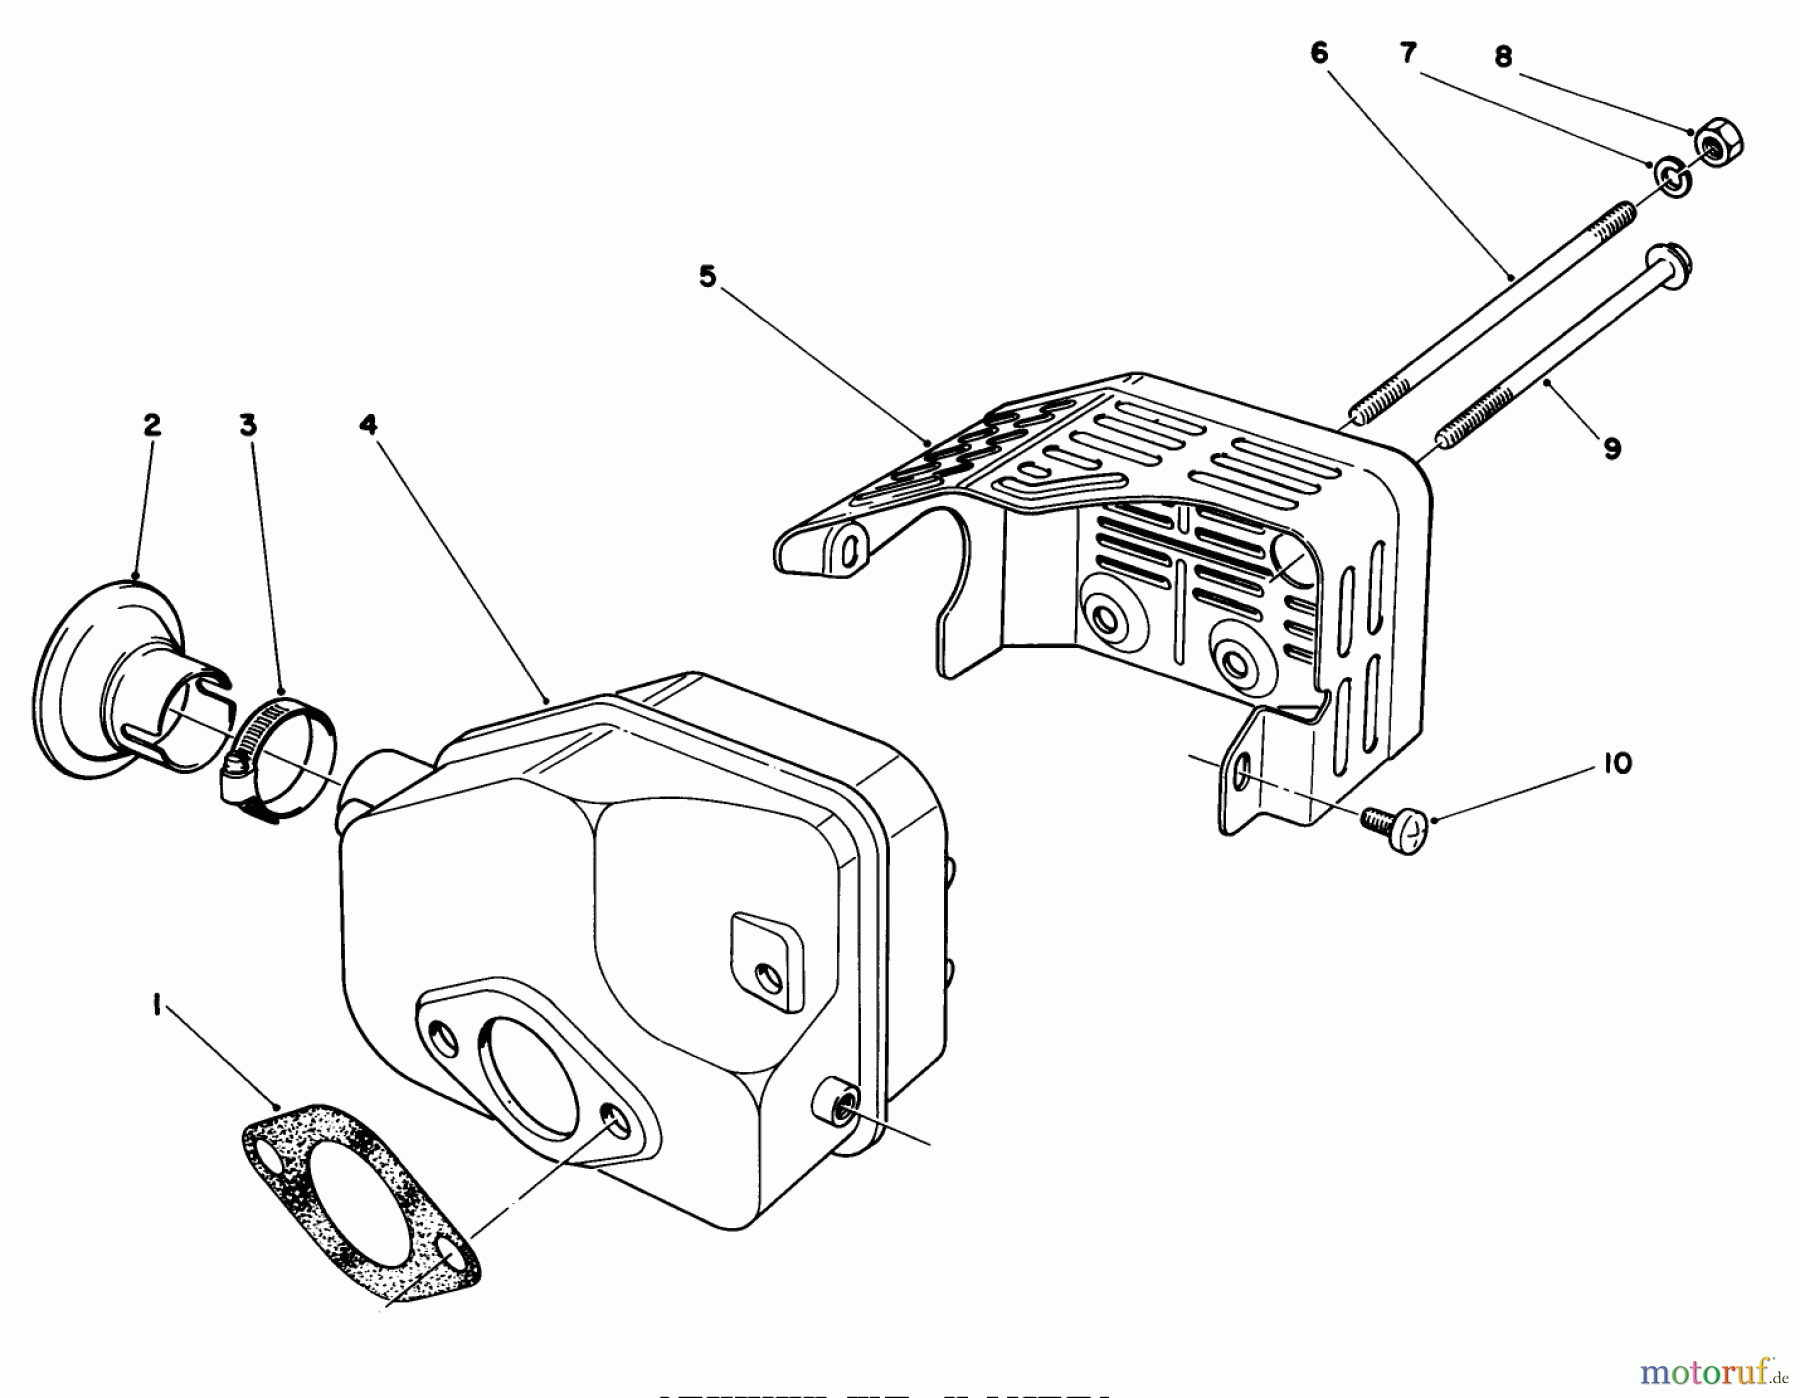  Toro Neu Mowers, Walk-Behind Seite 1 16785 - Toro Lawnmower, 1987 (7000001-7999999) MUFFLER ASSEMBLY (ENGINE NO. 47PF5)(ENGINE NO. 47PG6)